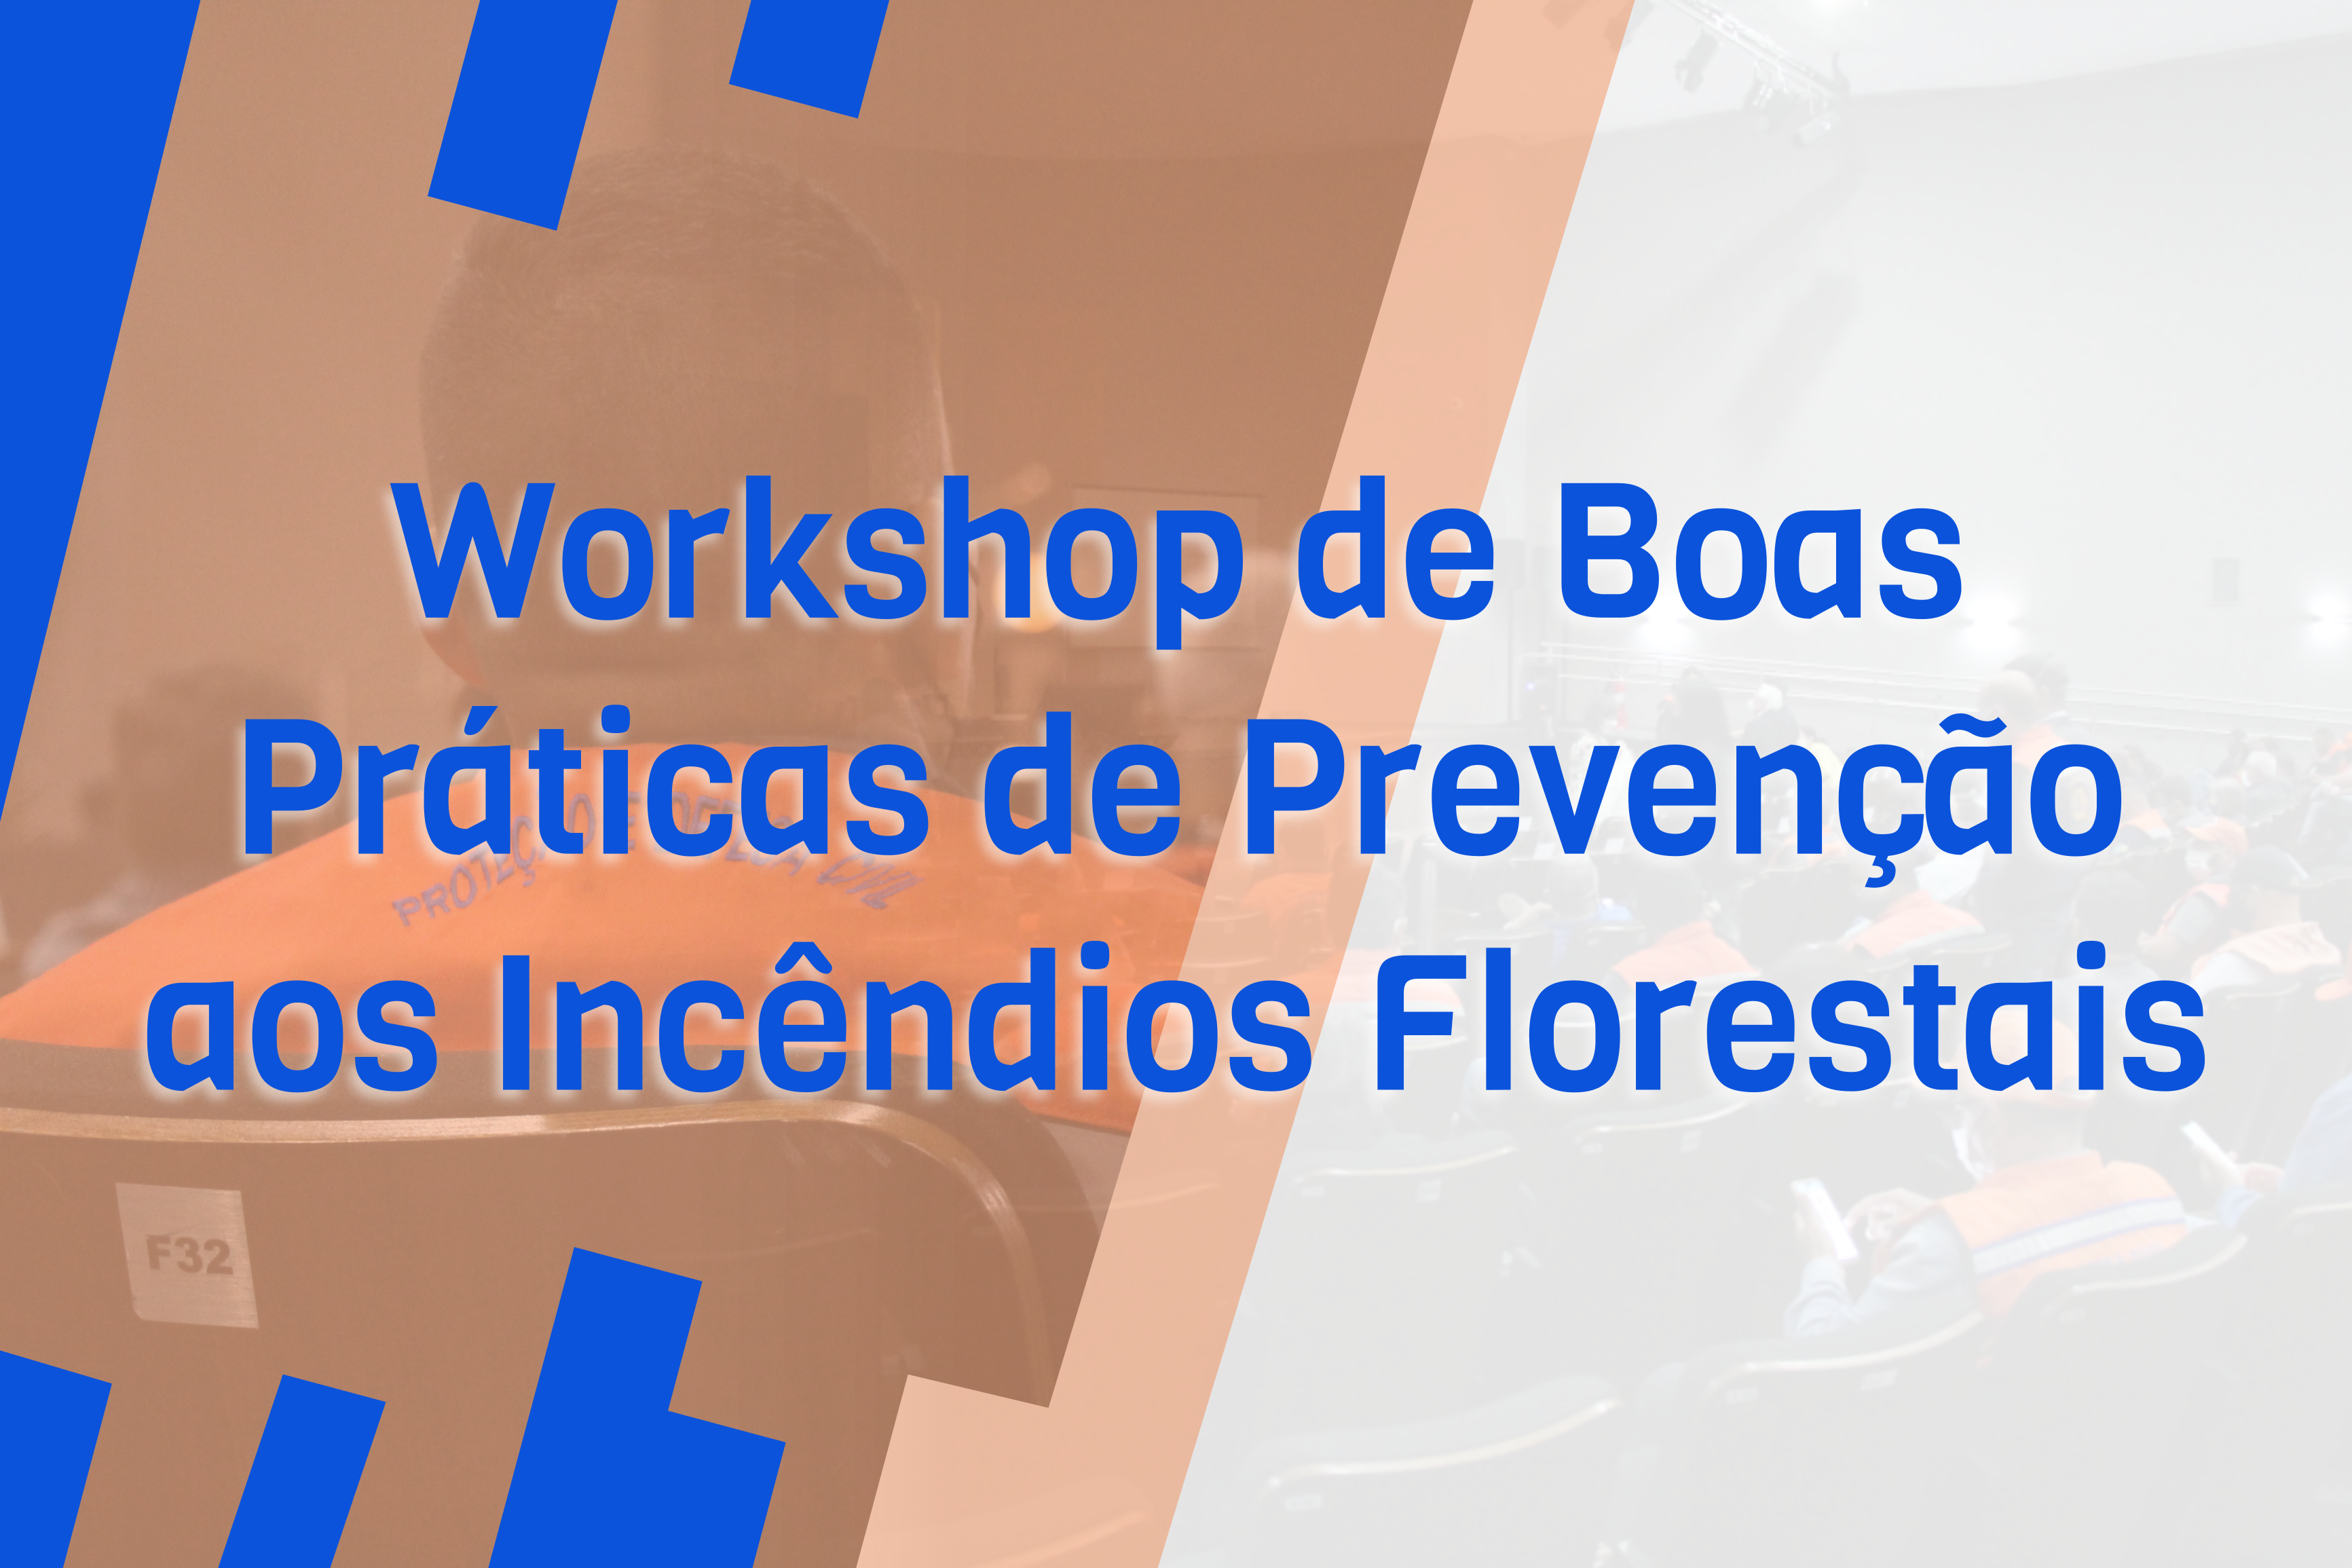 Workshop de Boas Práticas de Prevenção aos Incêndios Florestais.